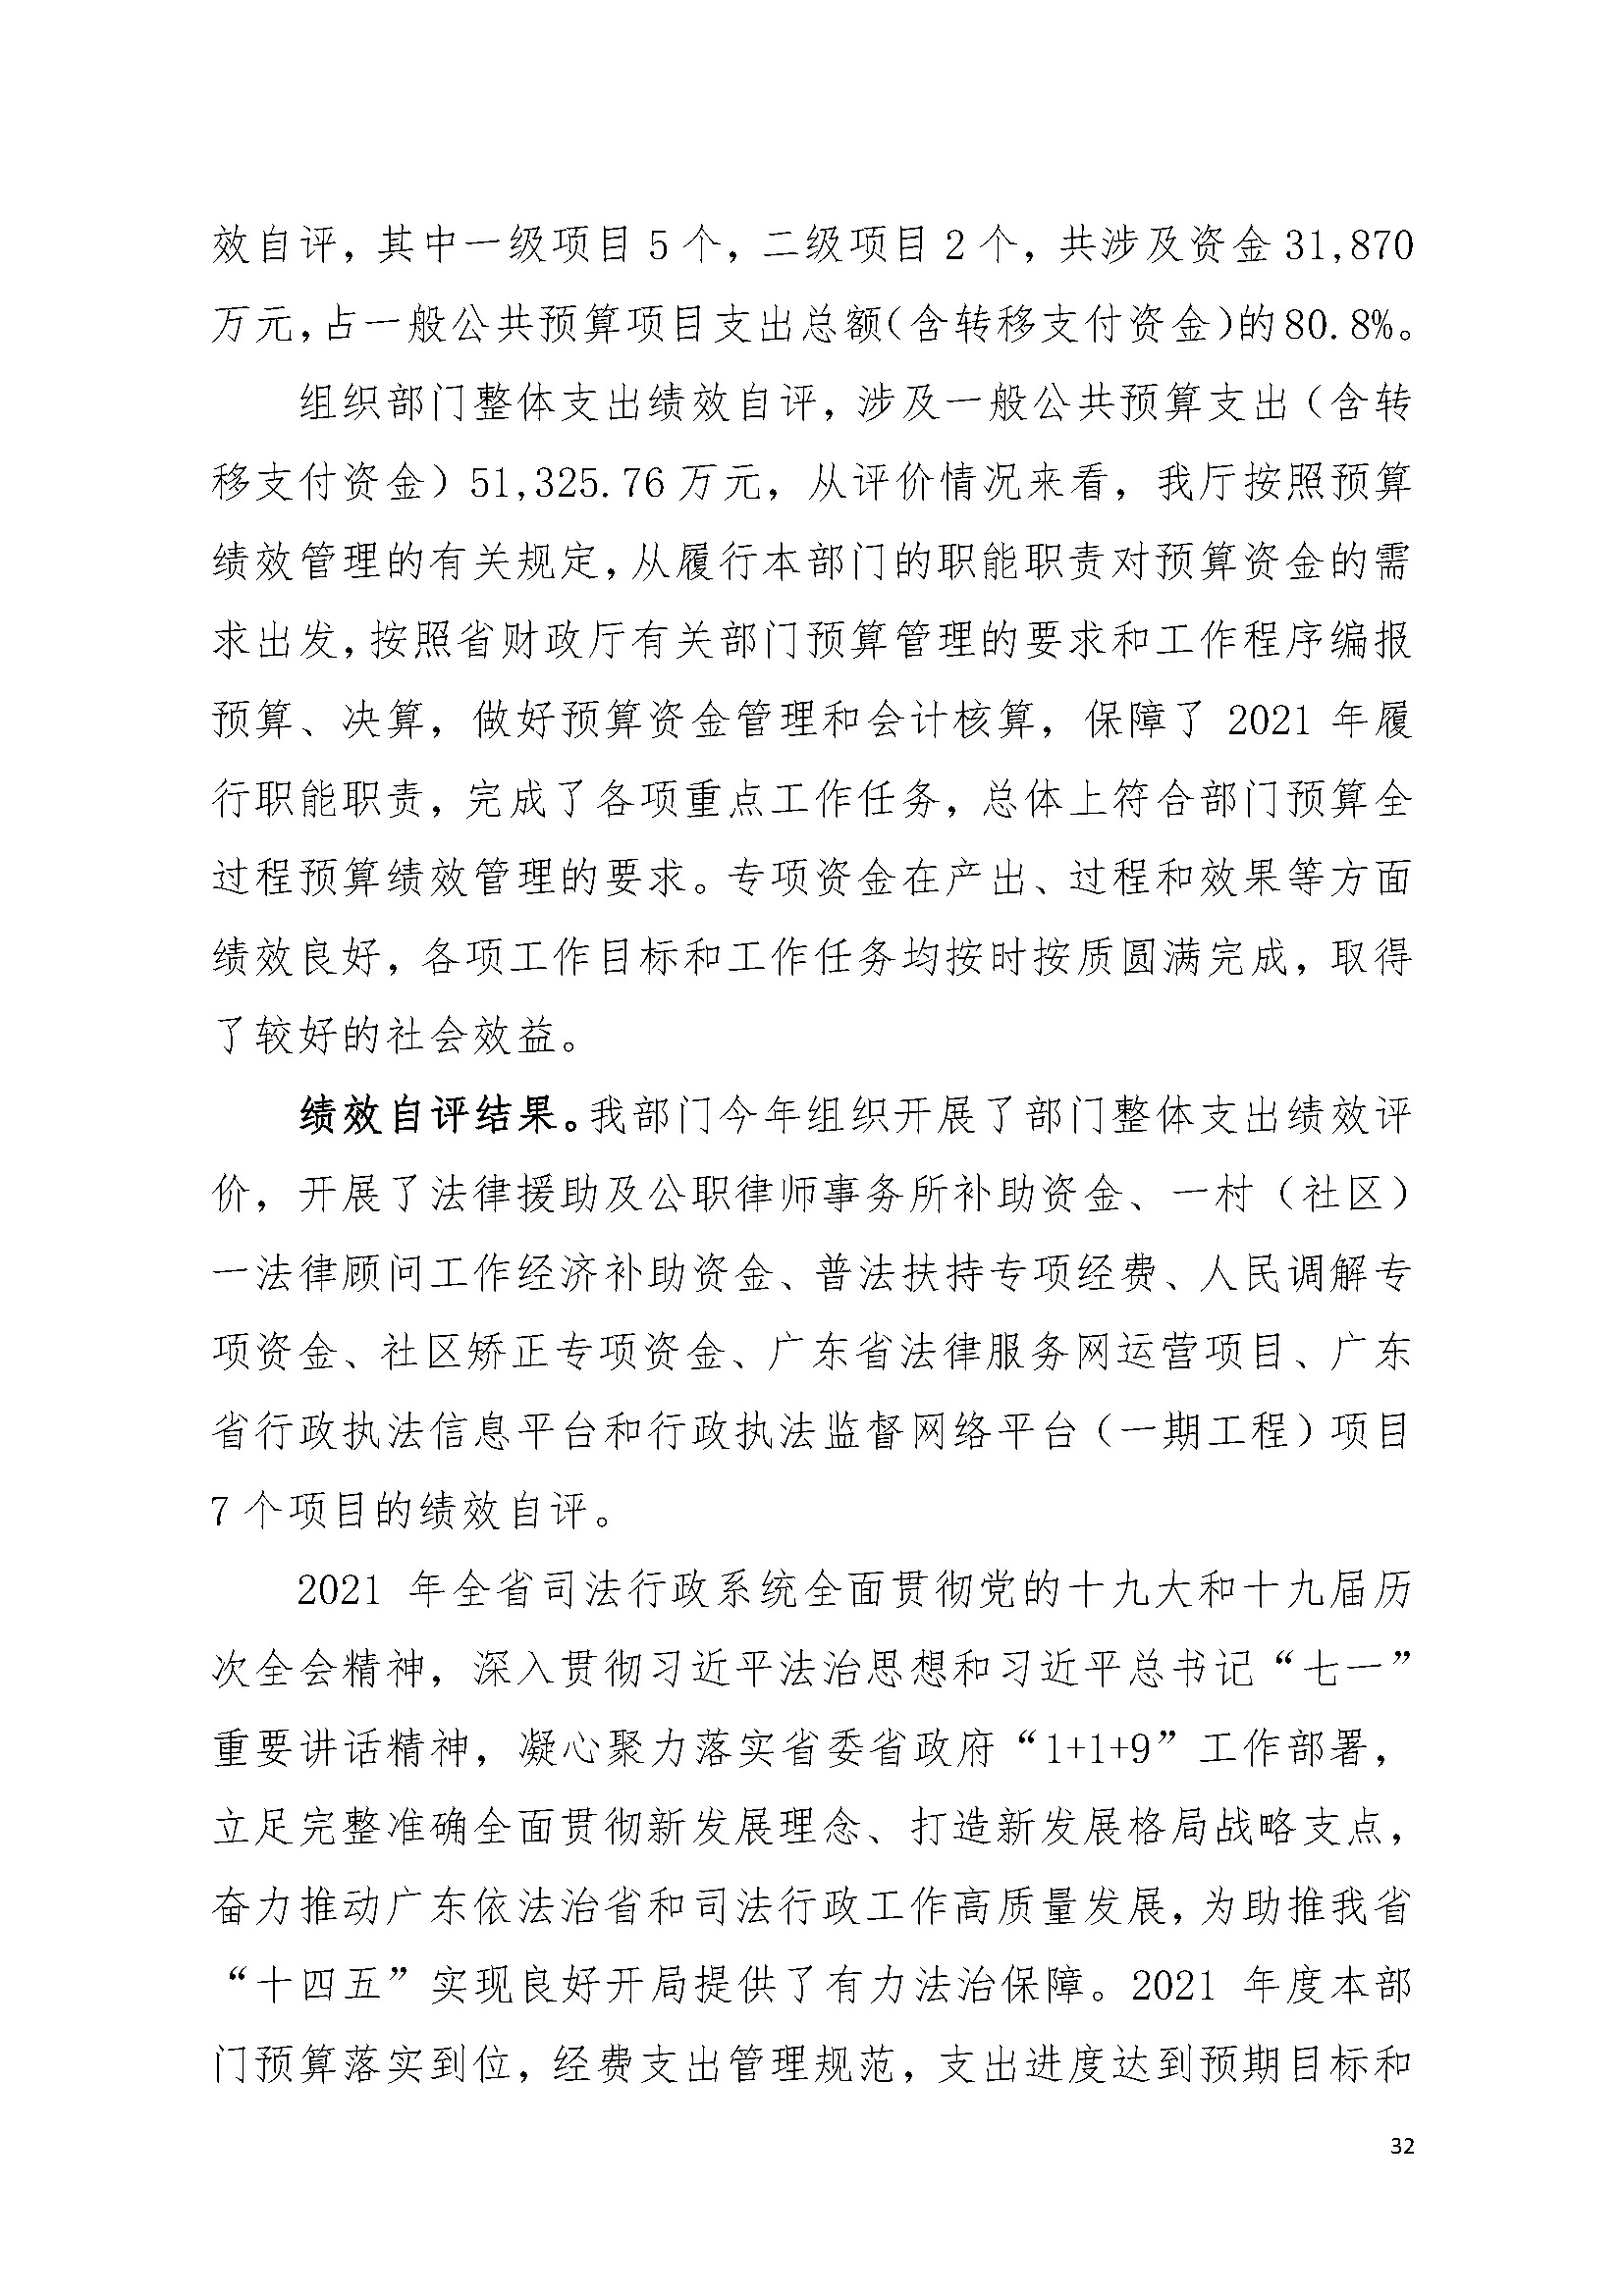 2021年广东省司法厅部门决算 _页面_32.jpg